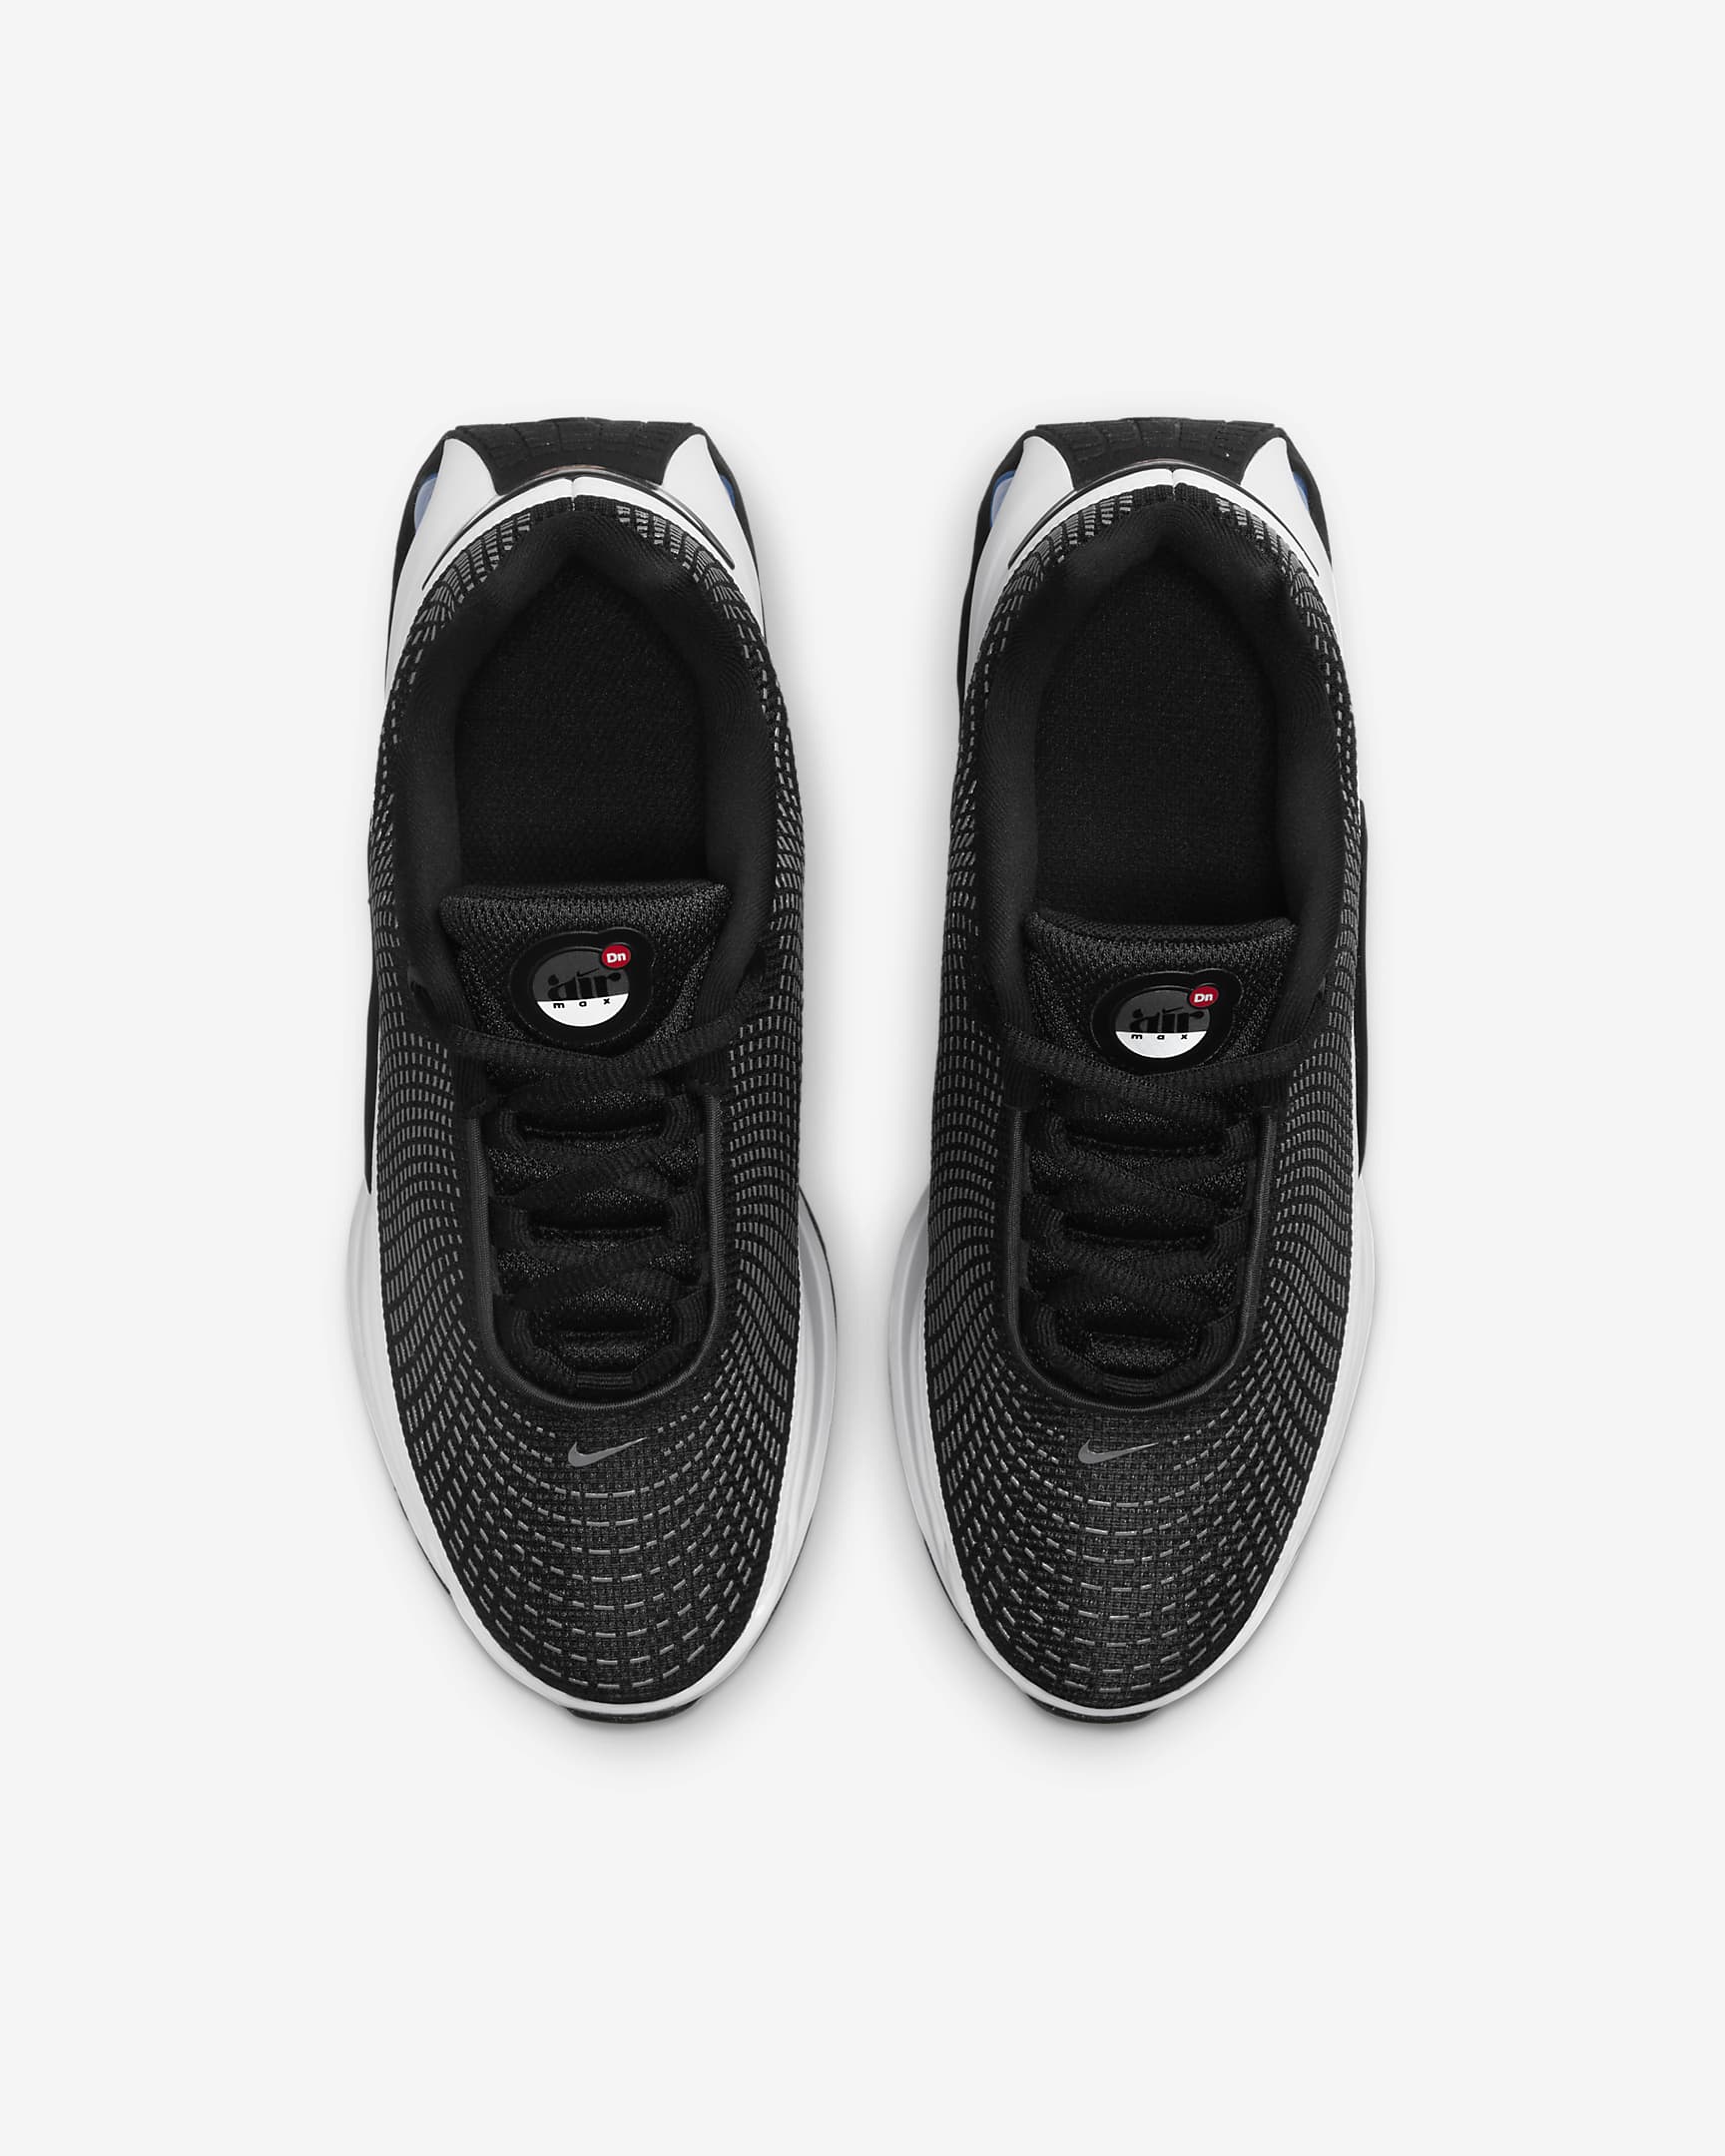 Chaussure Nike Air Max Dn pour ado - Noir/Cool Grey/Anthracite/Blanc